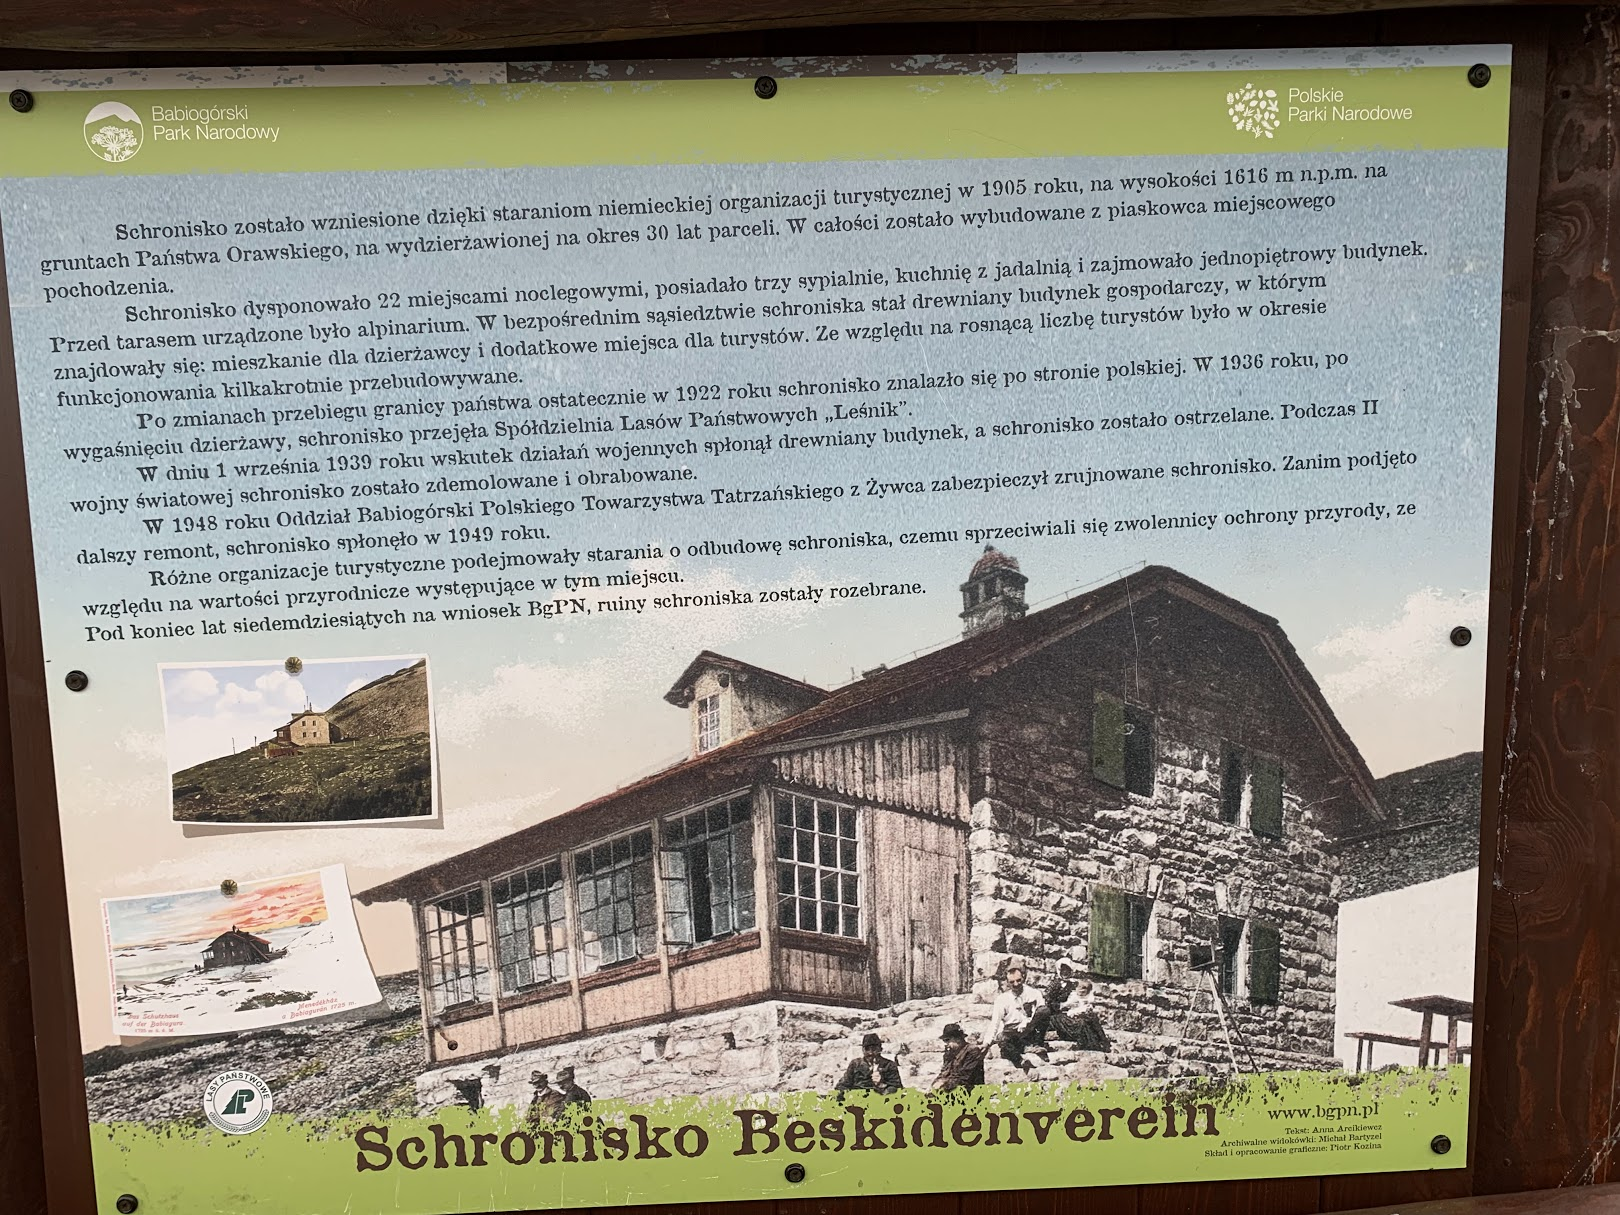 Historia schroniska Beskidenverein